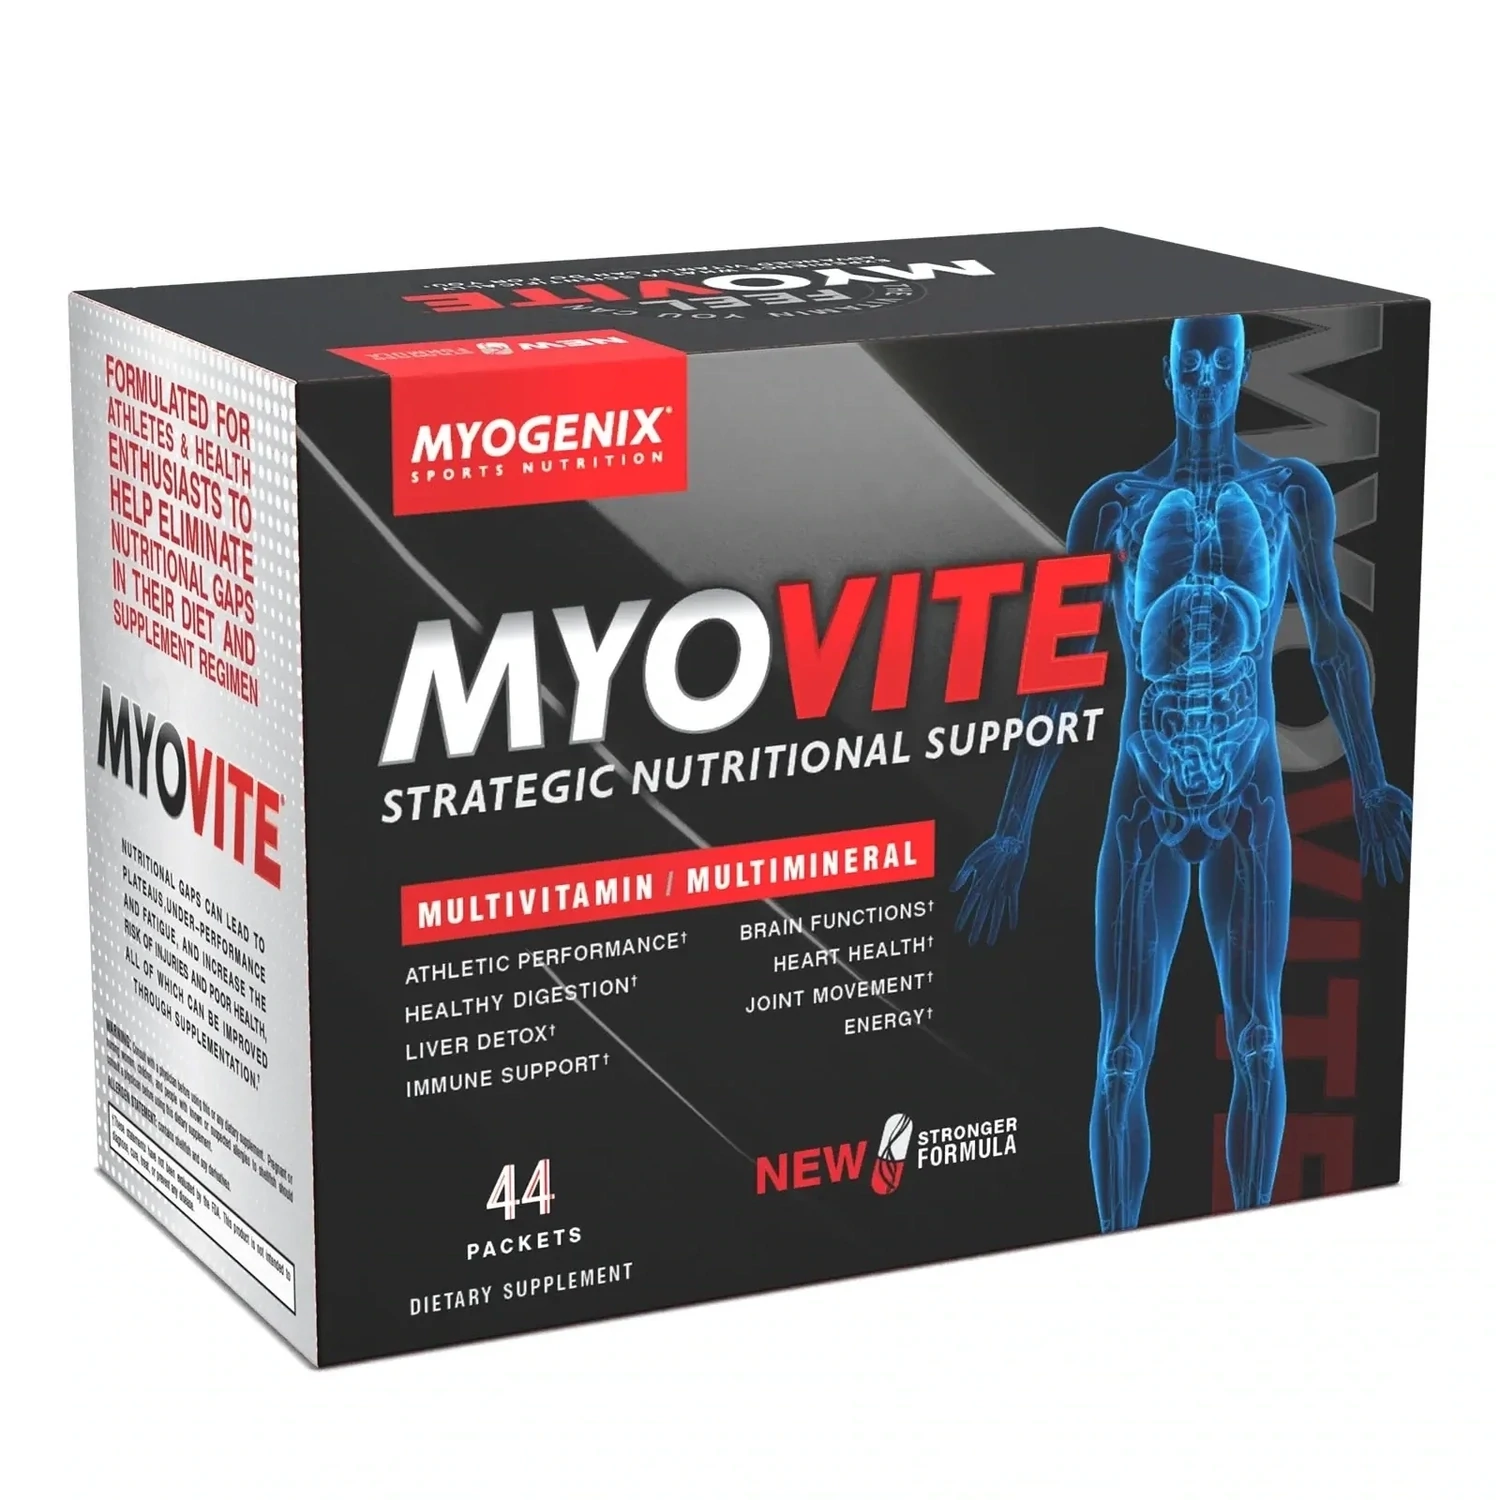 Myogenix Myovite Multivitamin Multimineral Packets